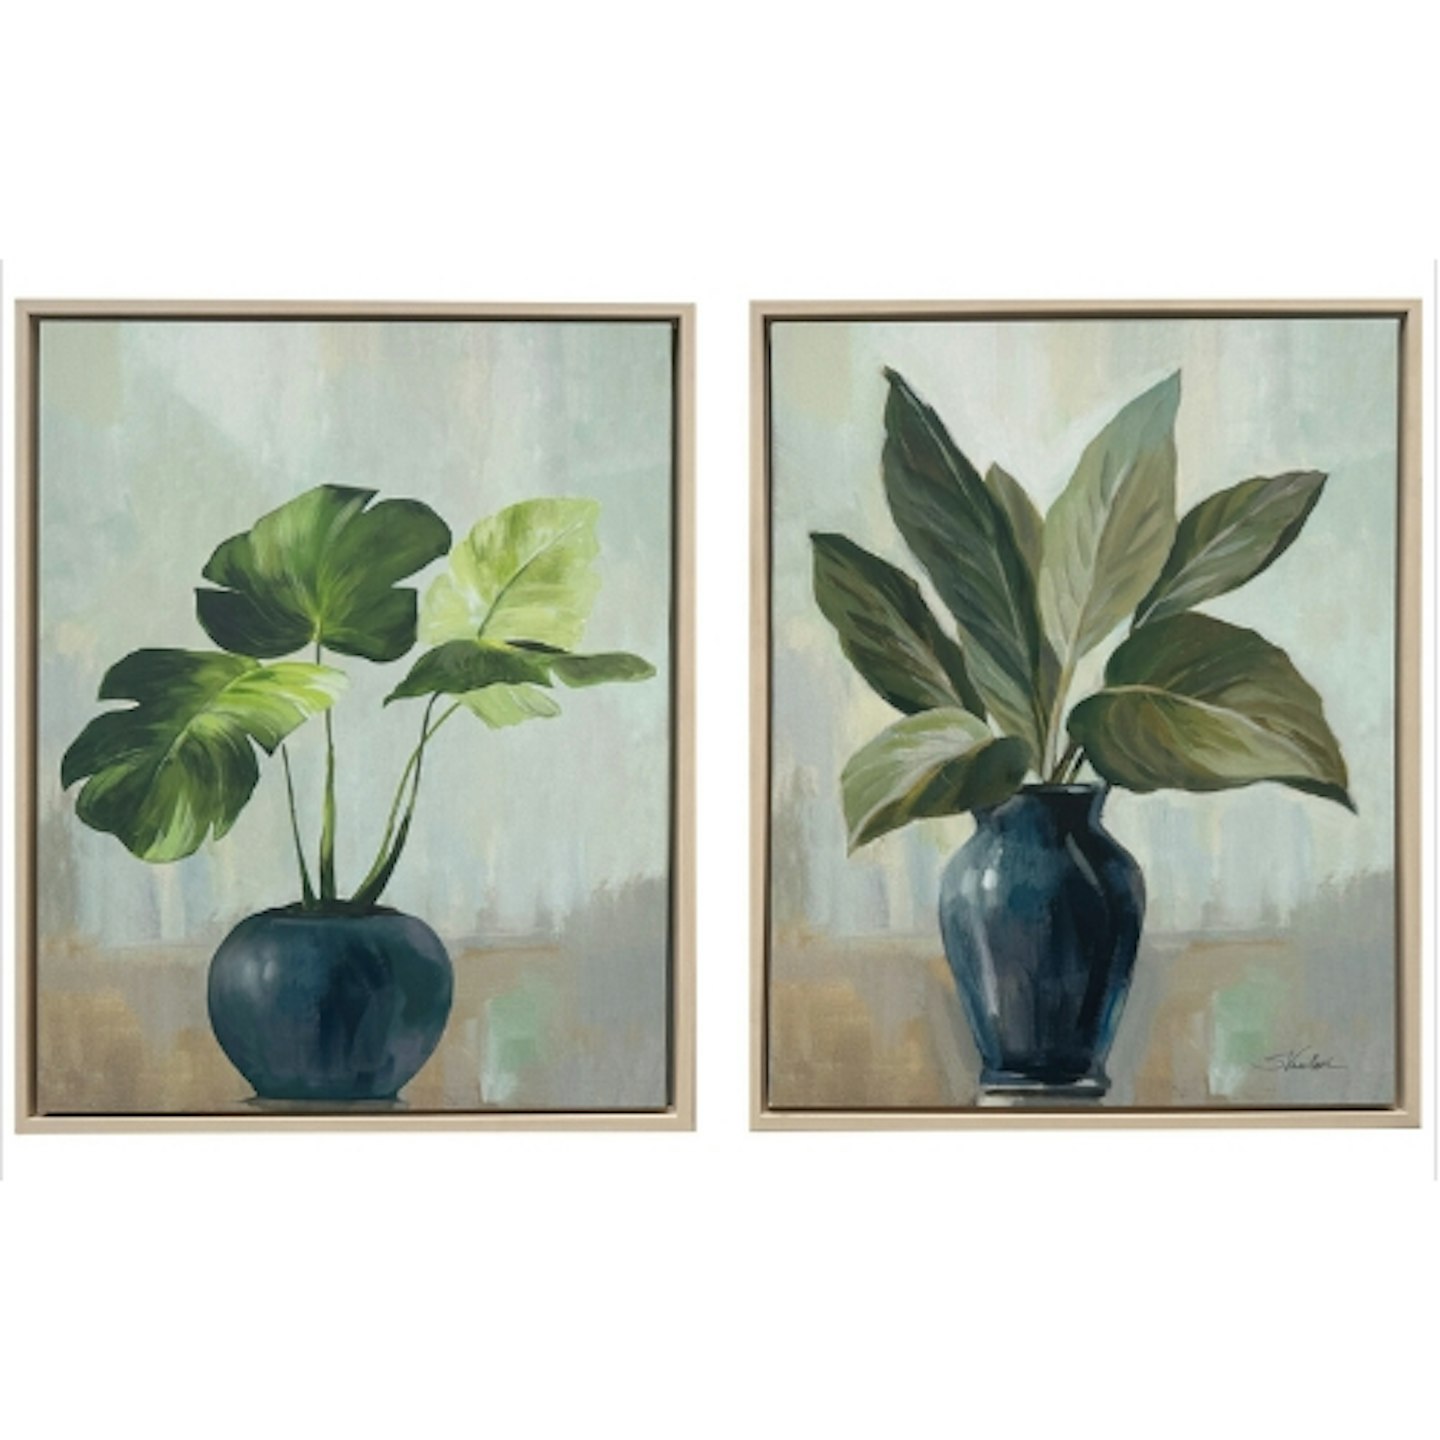 Wilko Still Life Plants Framed Canvas - Green